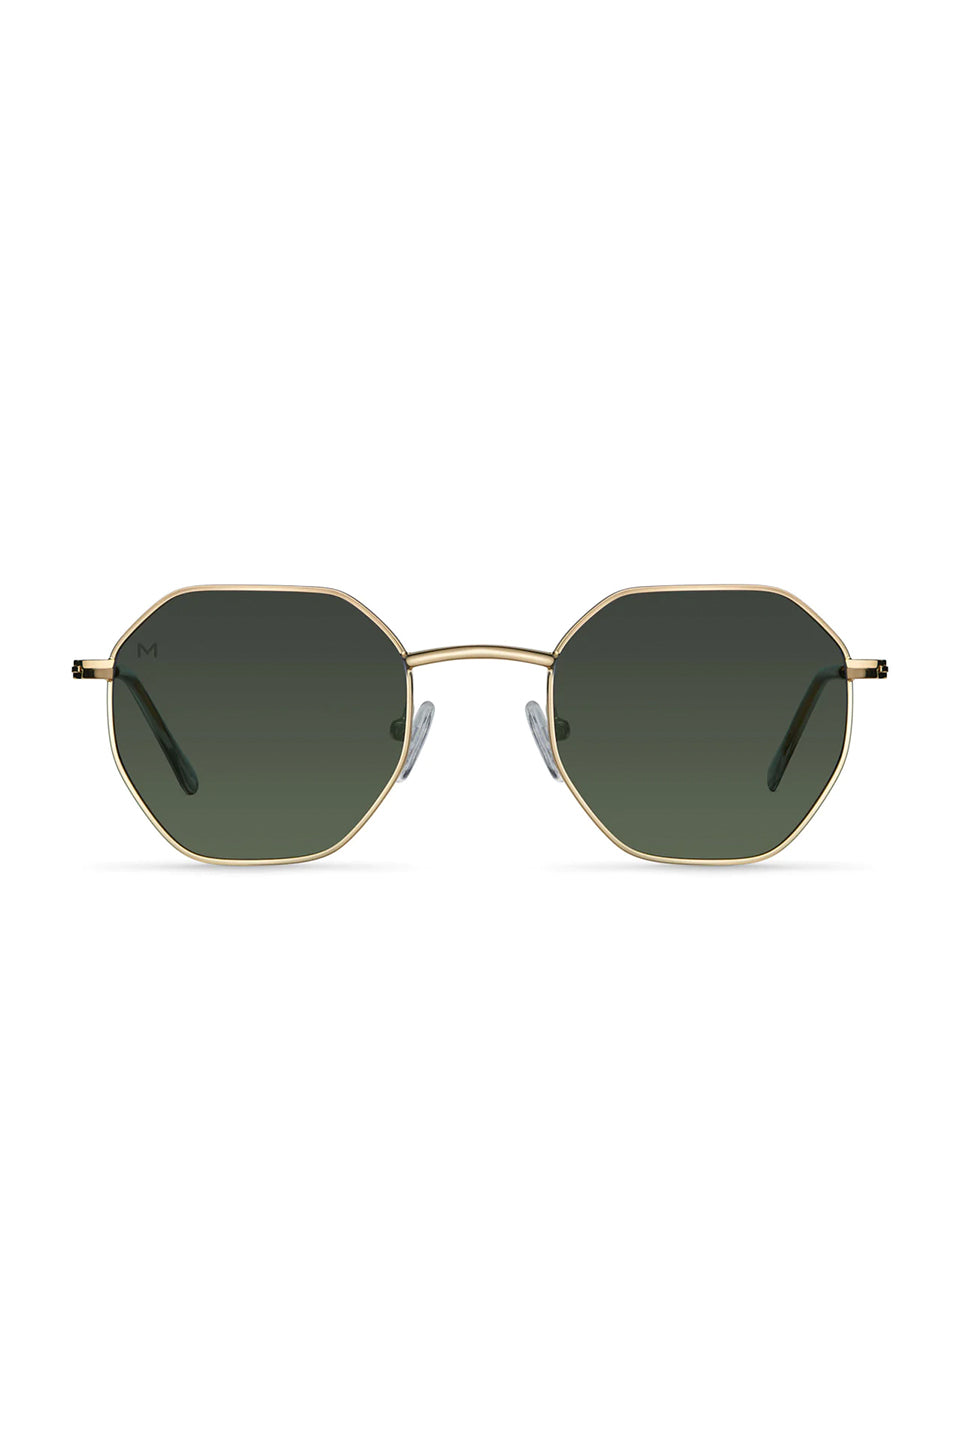 MELLER | Endo Sunglasses - Gold Olive